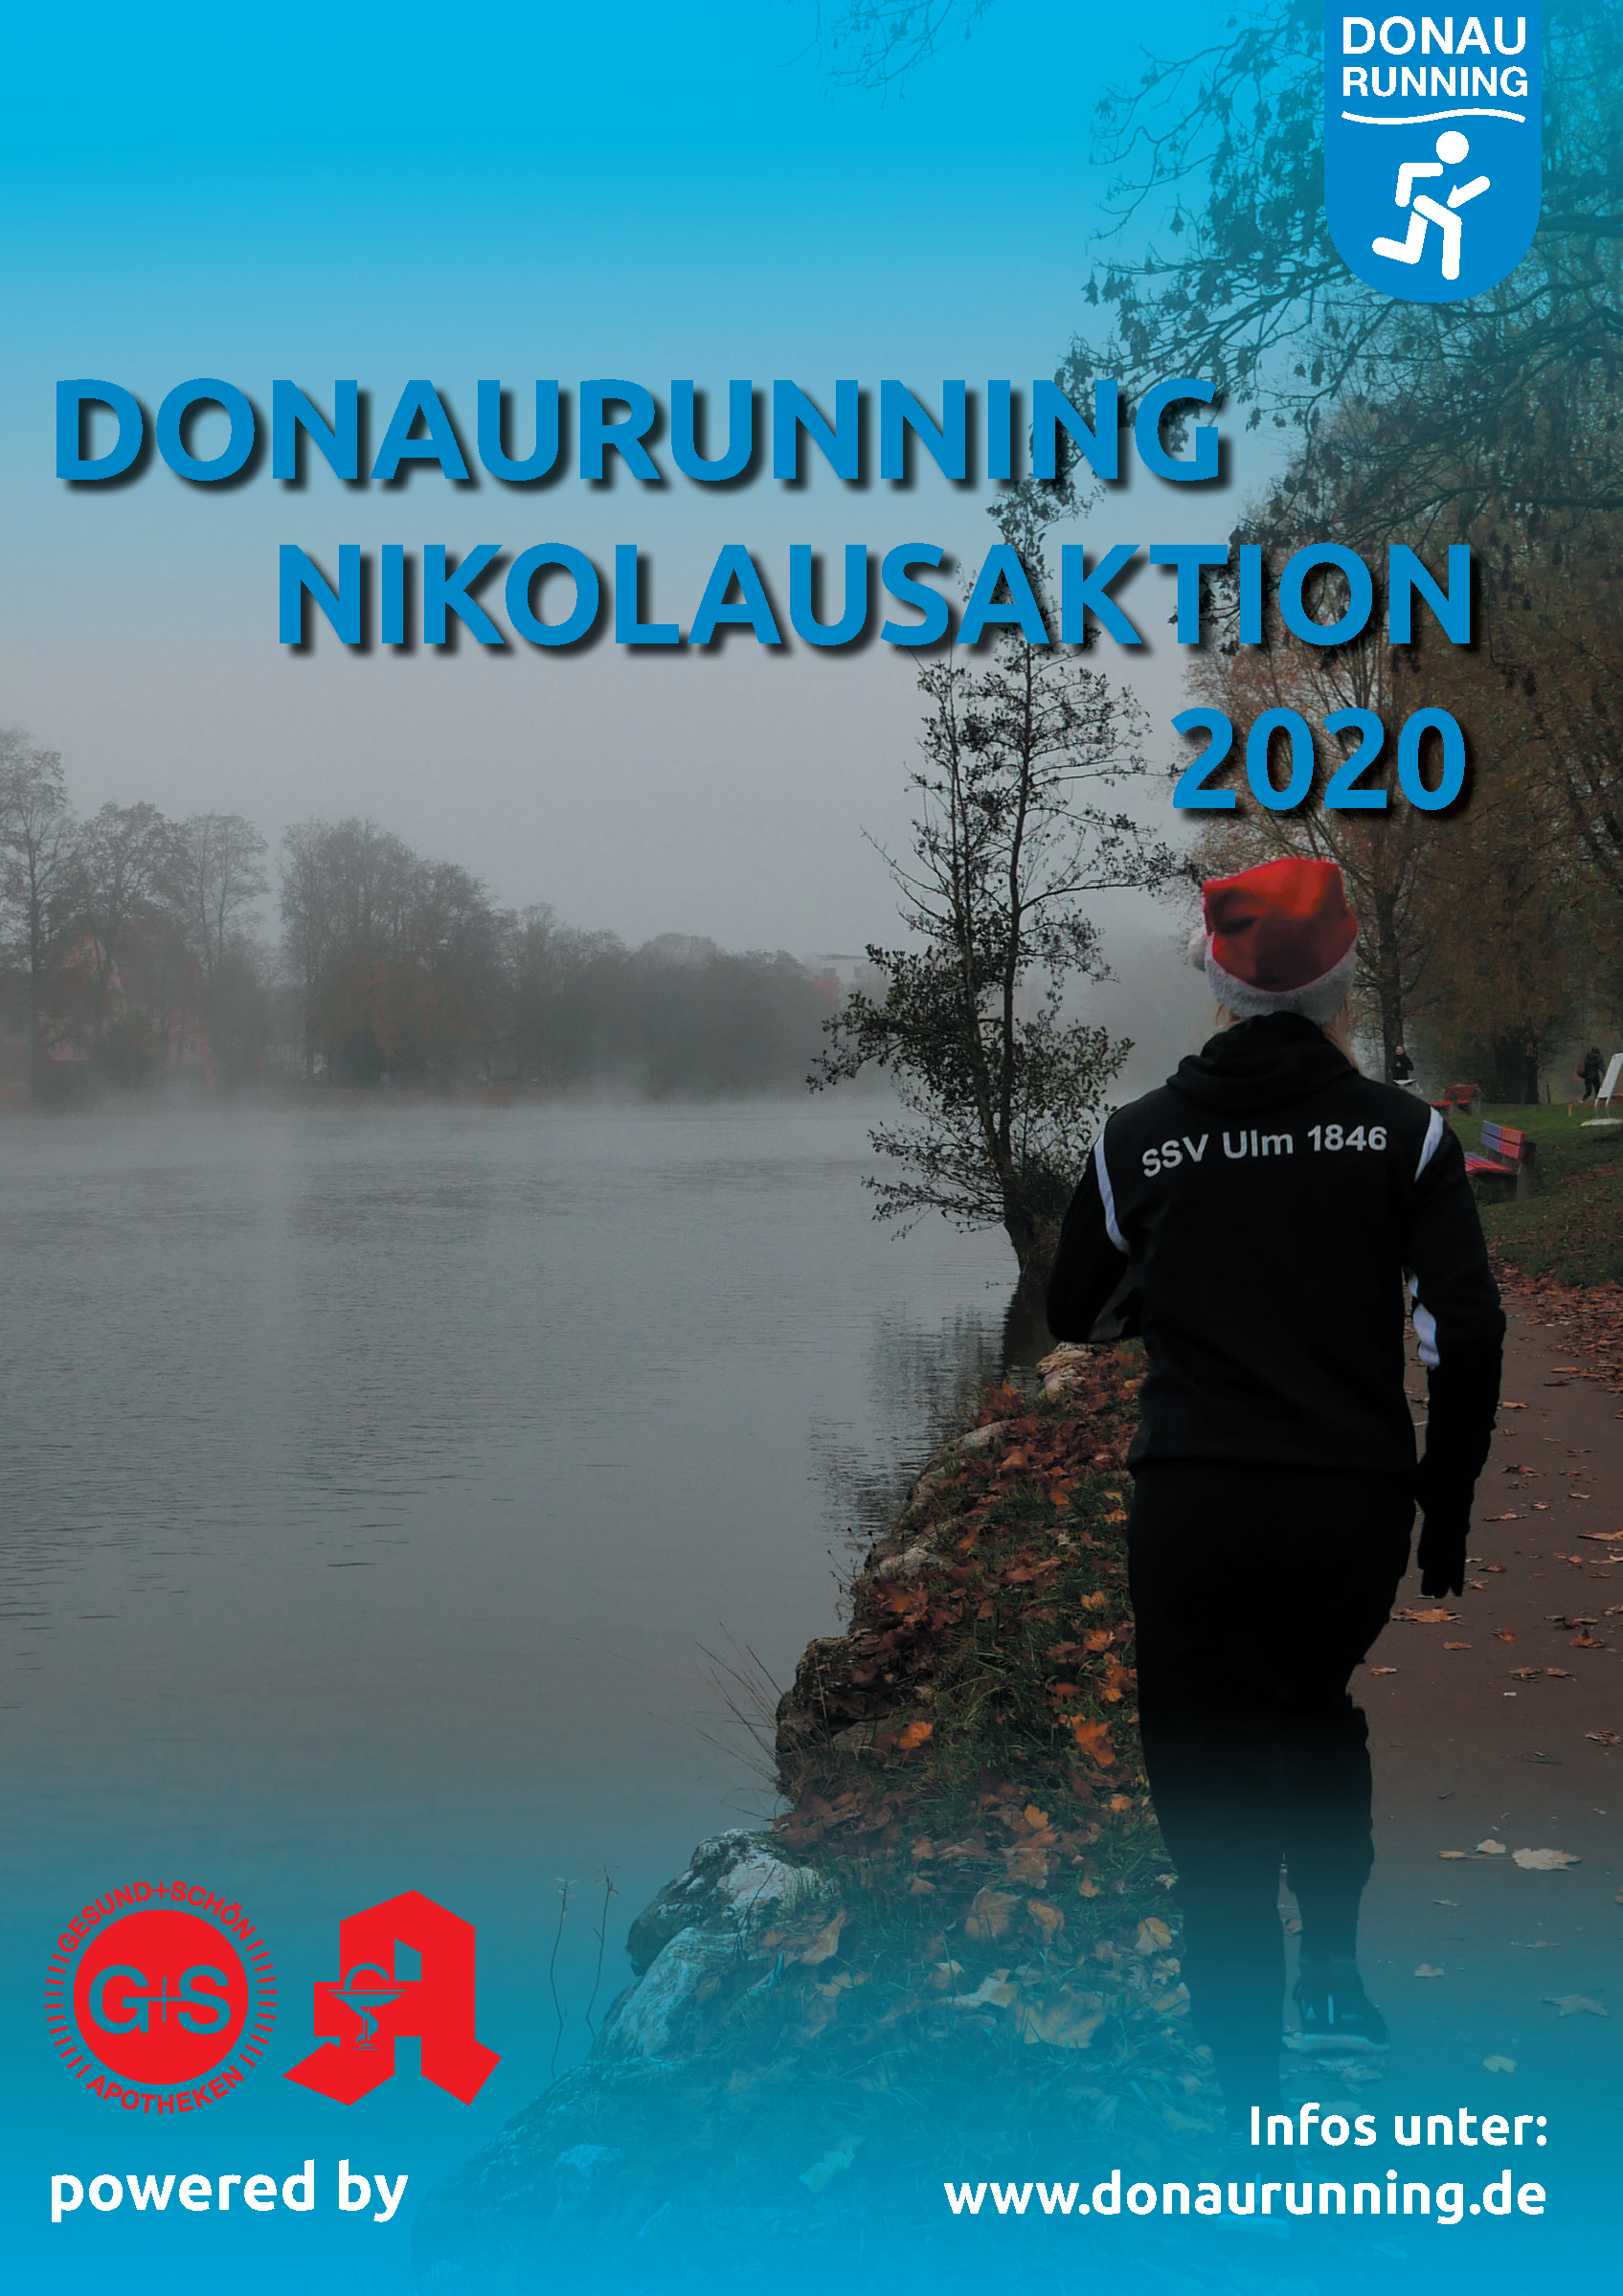 Donaurunning Nikolausaktion 2020 powered by G+S Apotheke